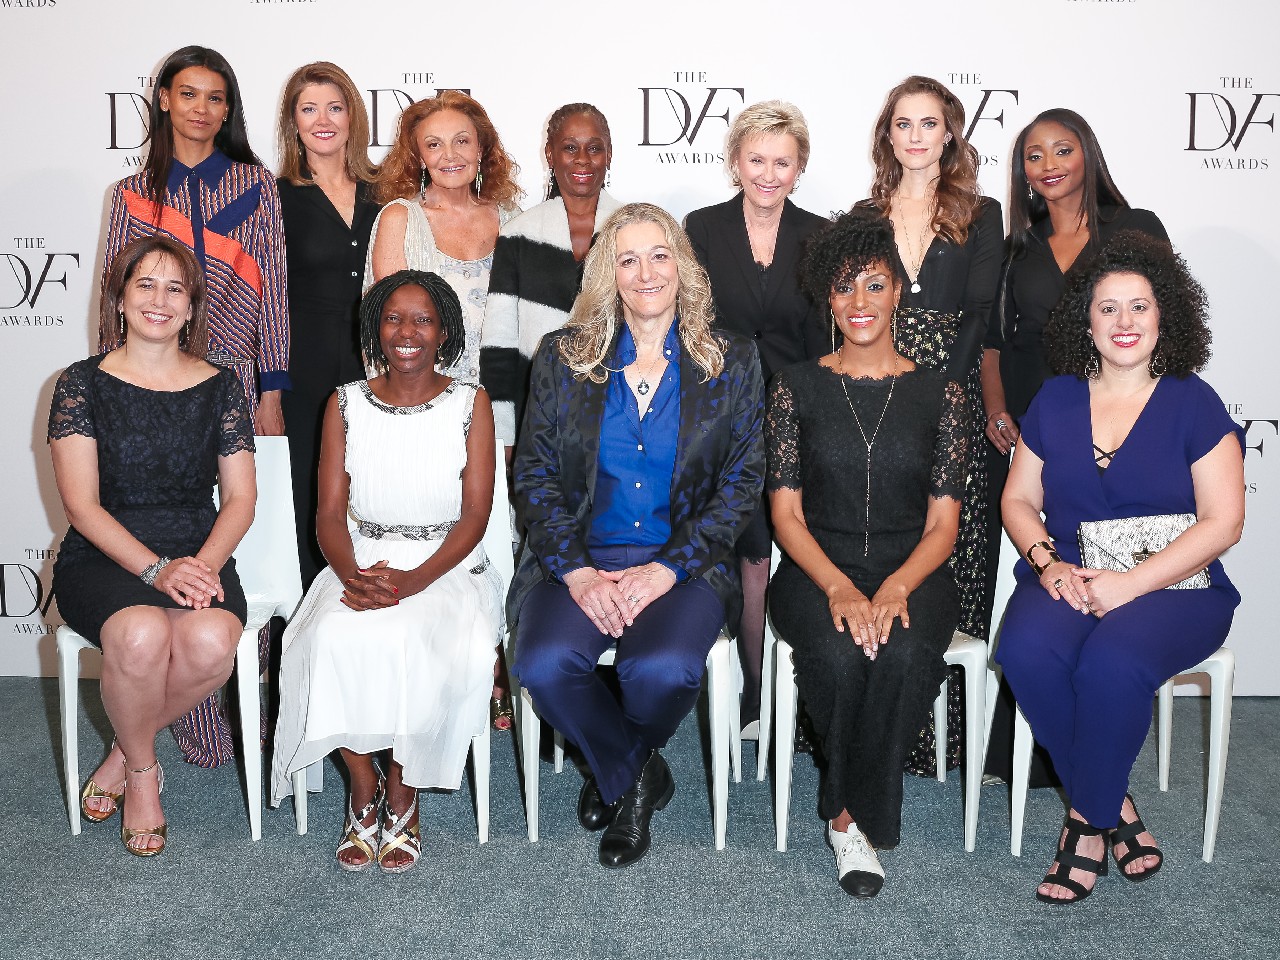 DVF Annual Awards 2016: Diane von Furstenberg e Tina Brown hanno premiato le vincitrici